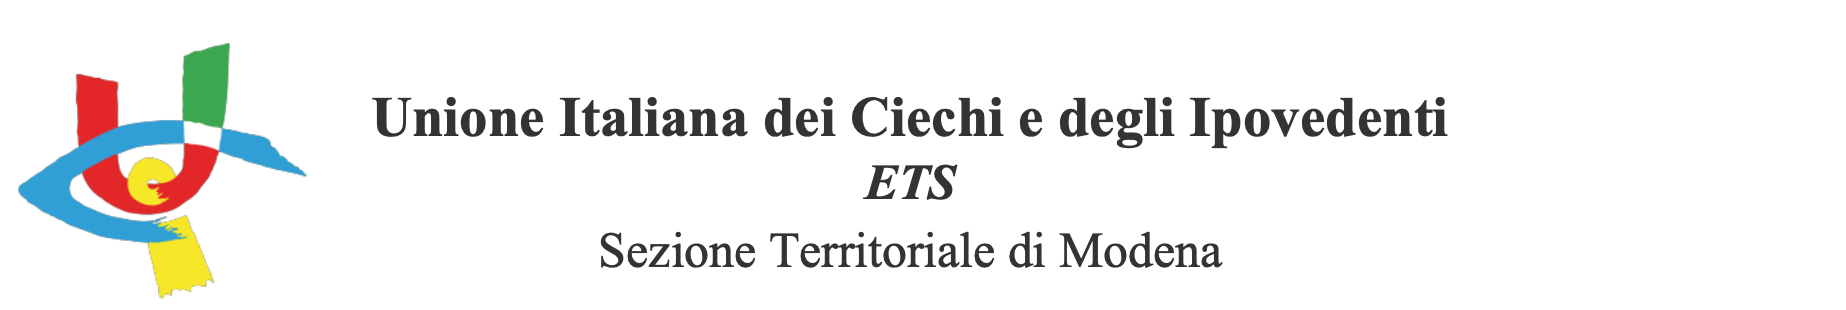 LOGO UICI Unione Italiana dei Ciechi e degli Ipovedenti ETS Sezione Territoriale di Modena